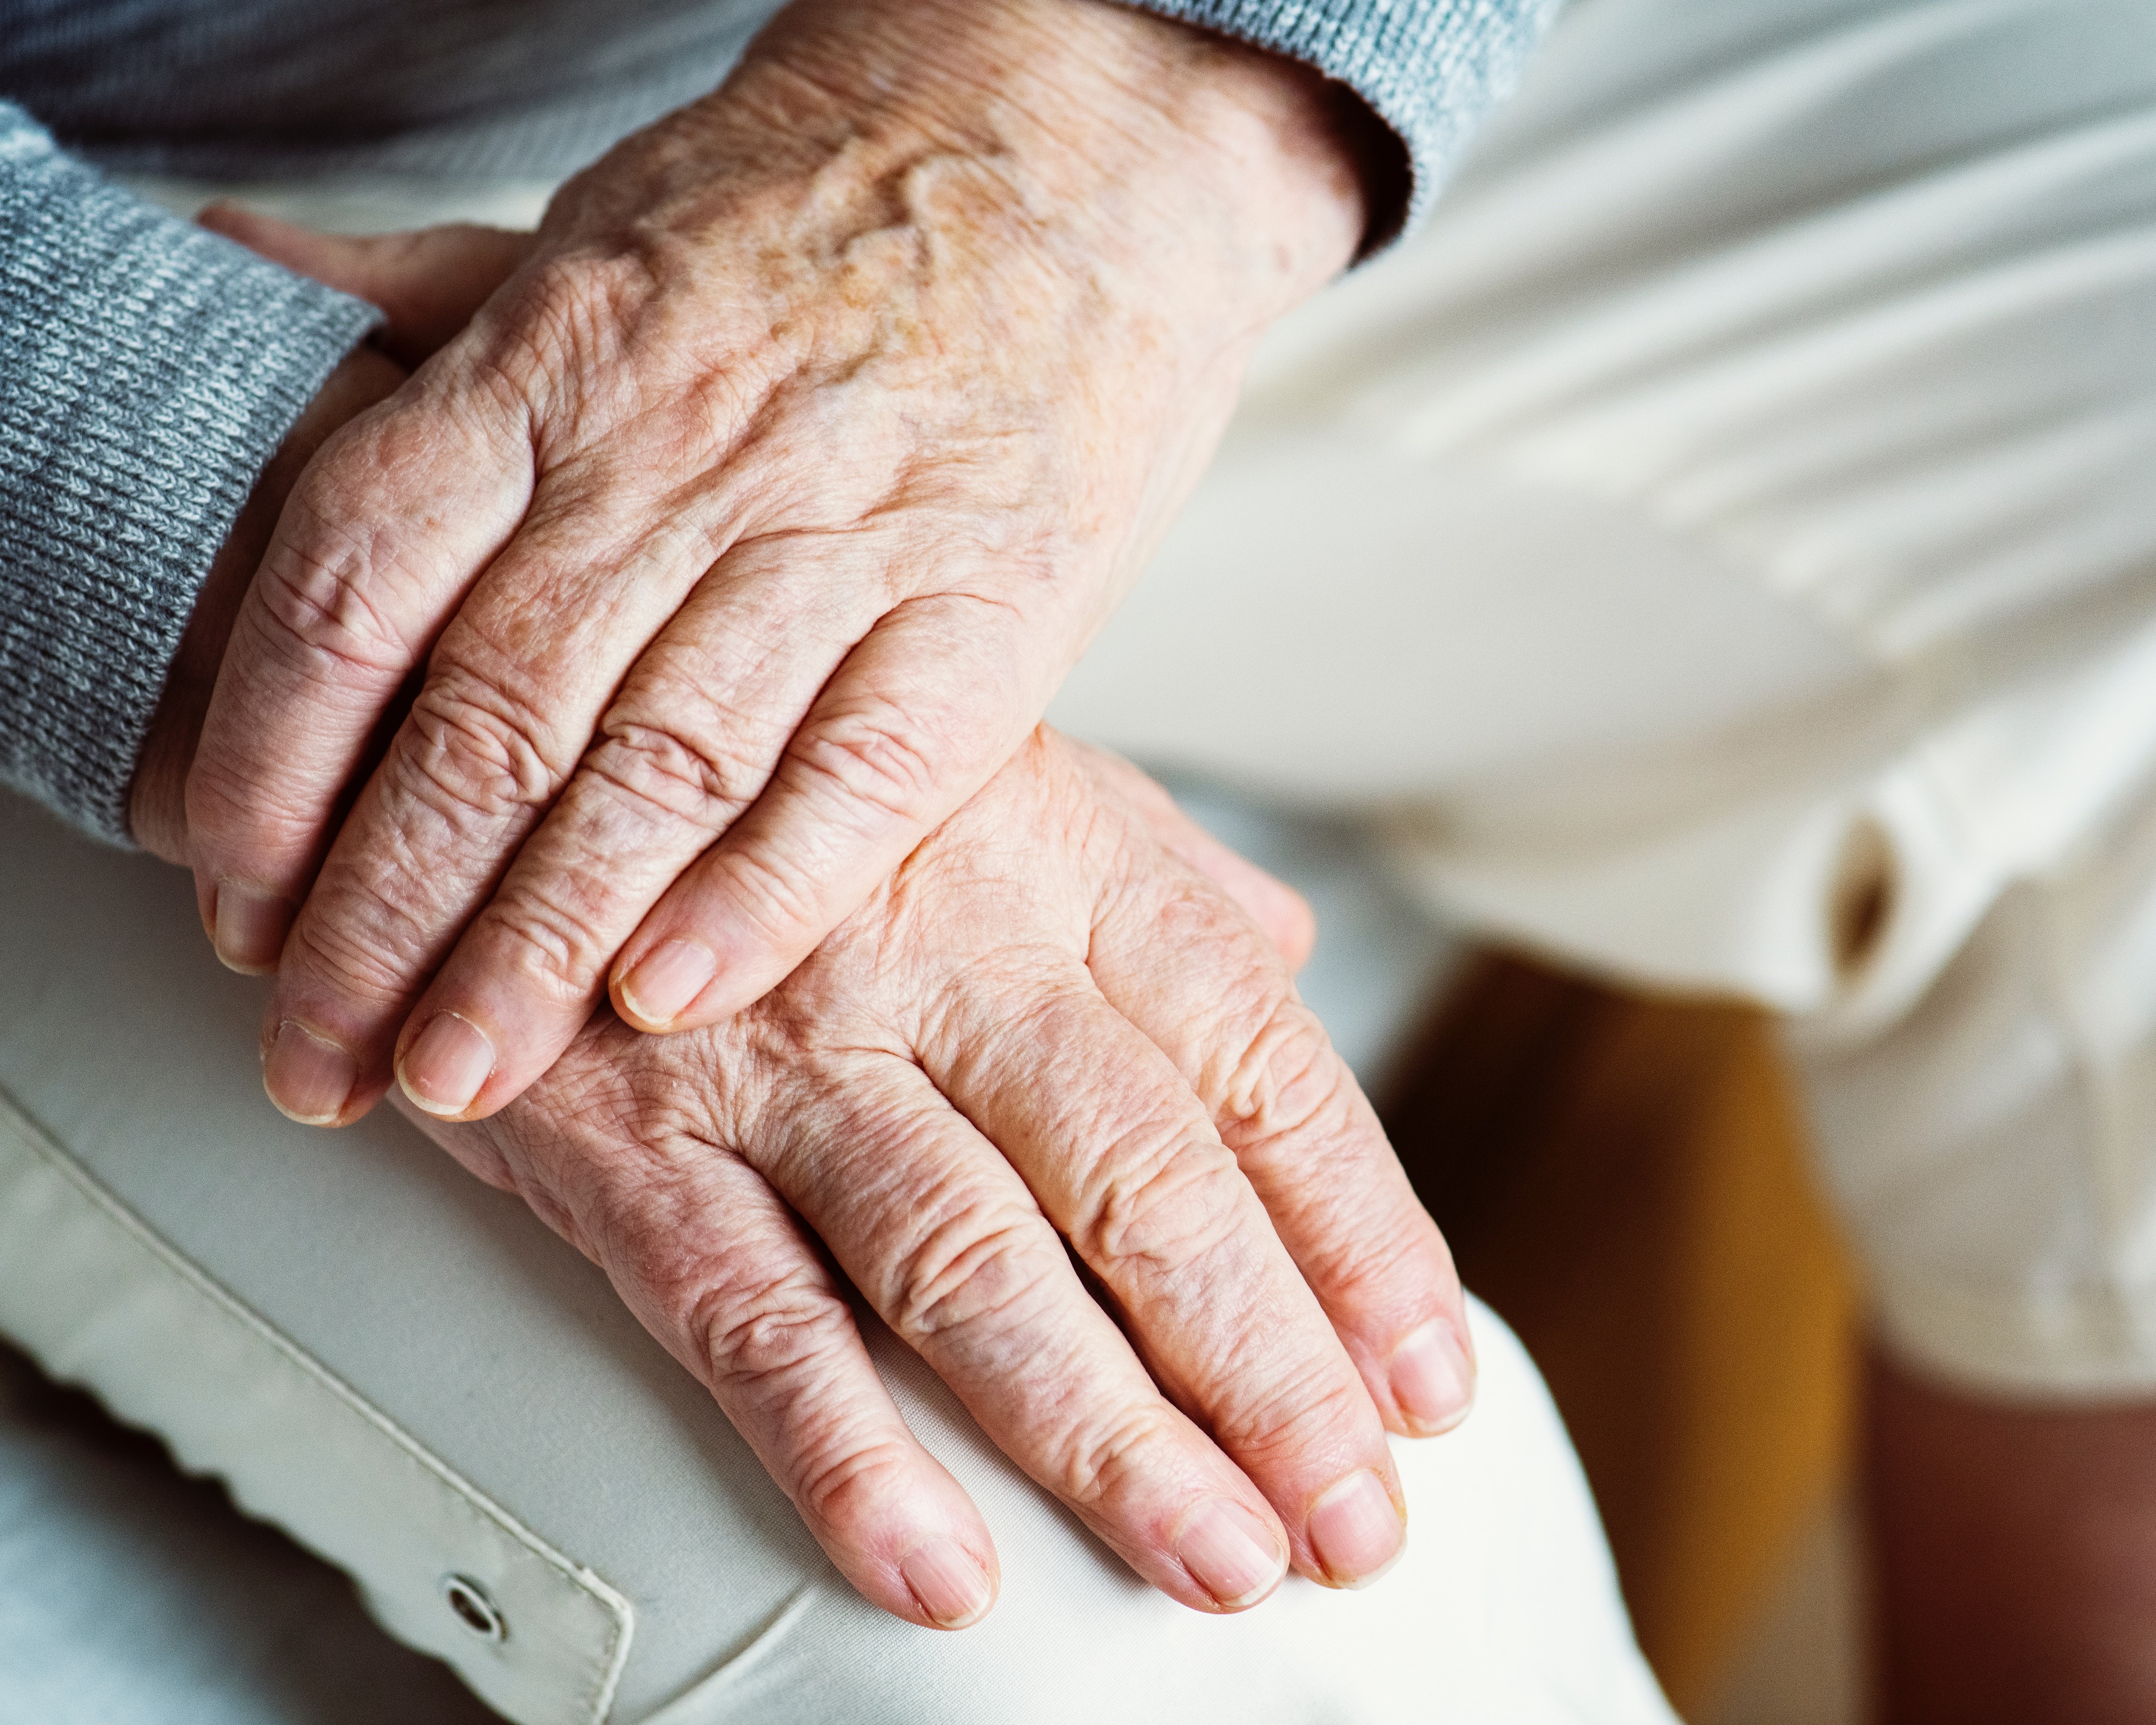 24 Stunden Betreuung Pflege Zu Hause Seniorenbetreuung